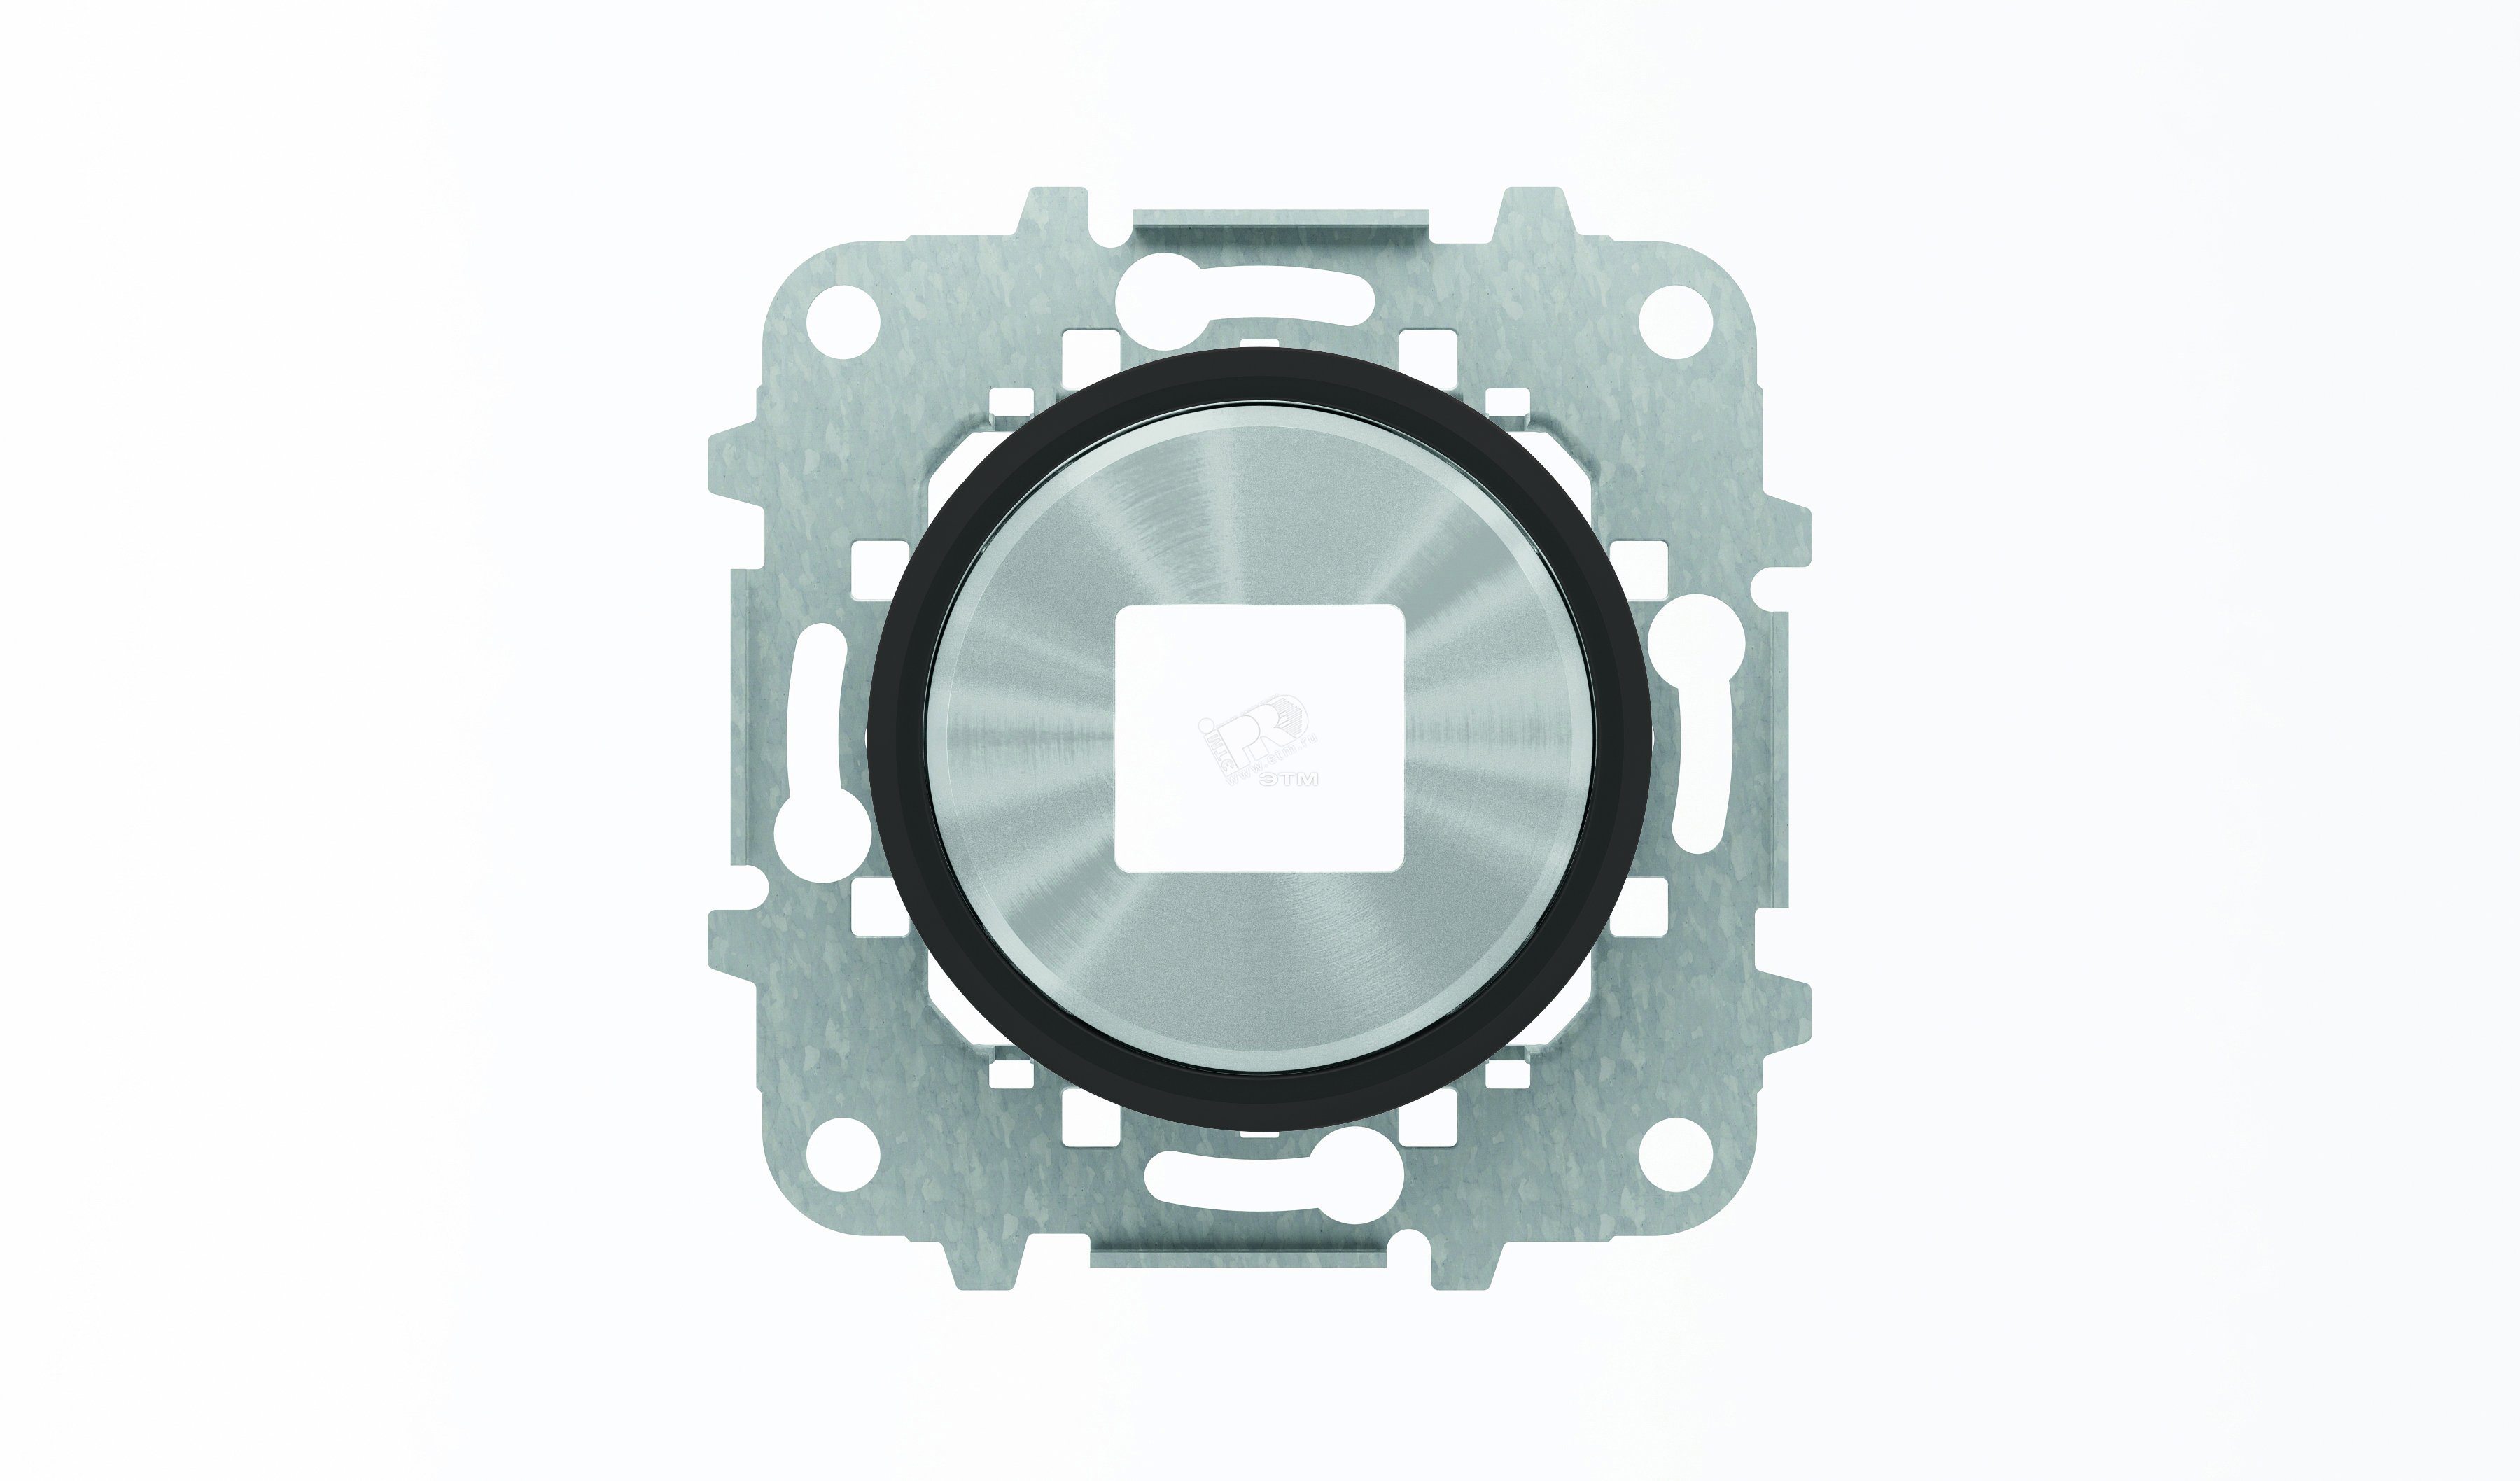 Накладка для механизмов зарядного устройства USB 8185 SKY Moon кольцо черное стекло 8685 CN ABB - превью 2